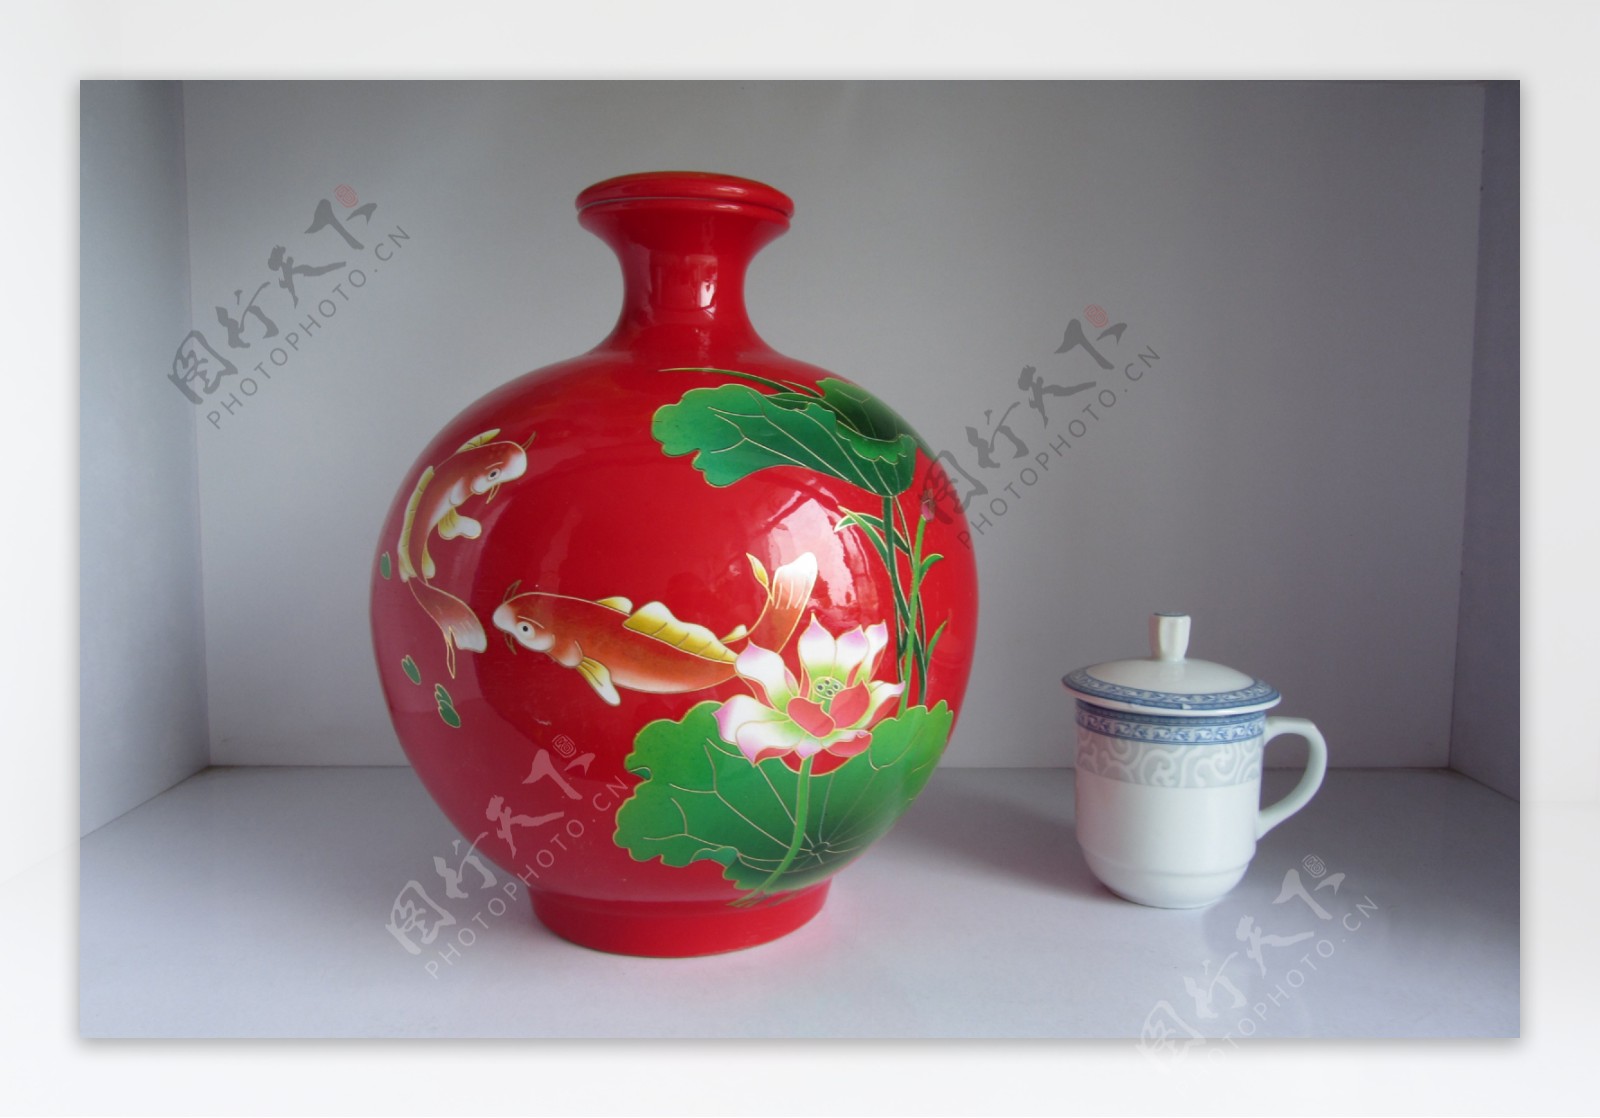 陶瓷红球酒瓶图片